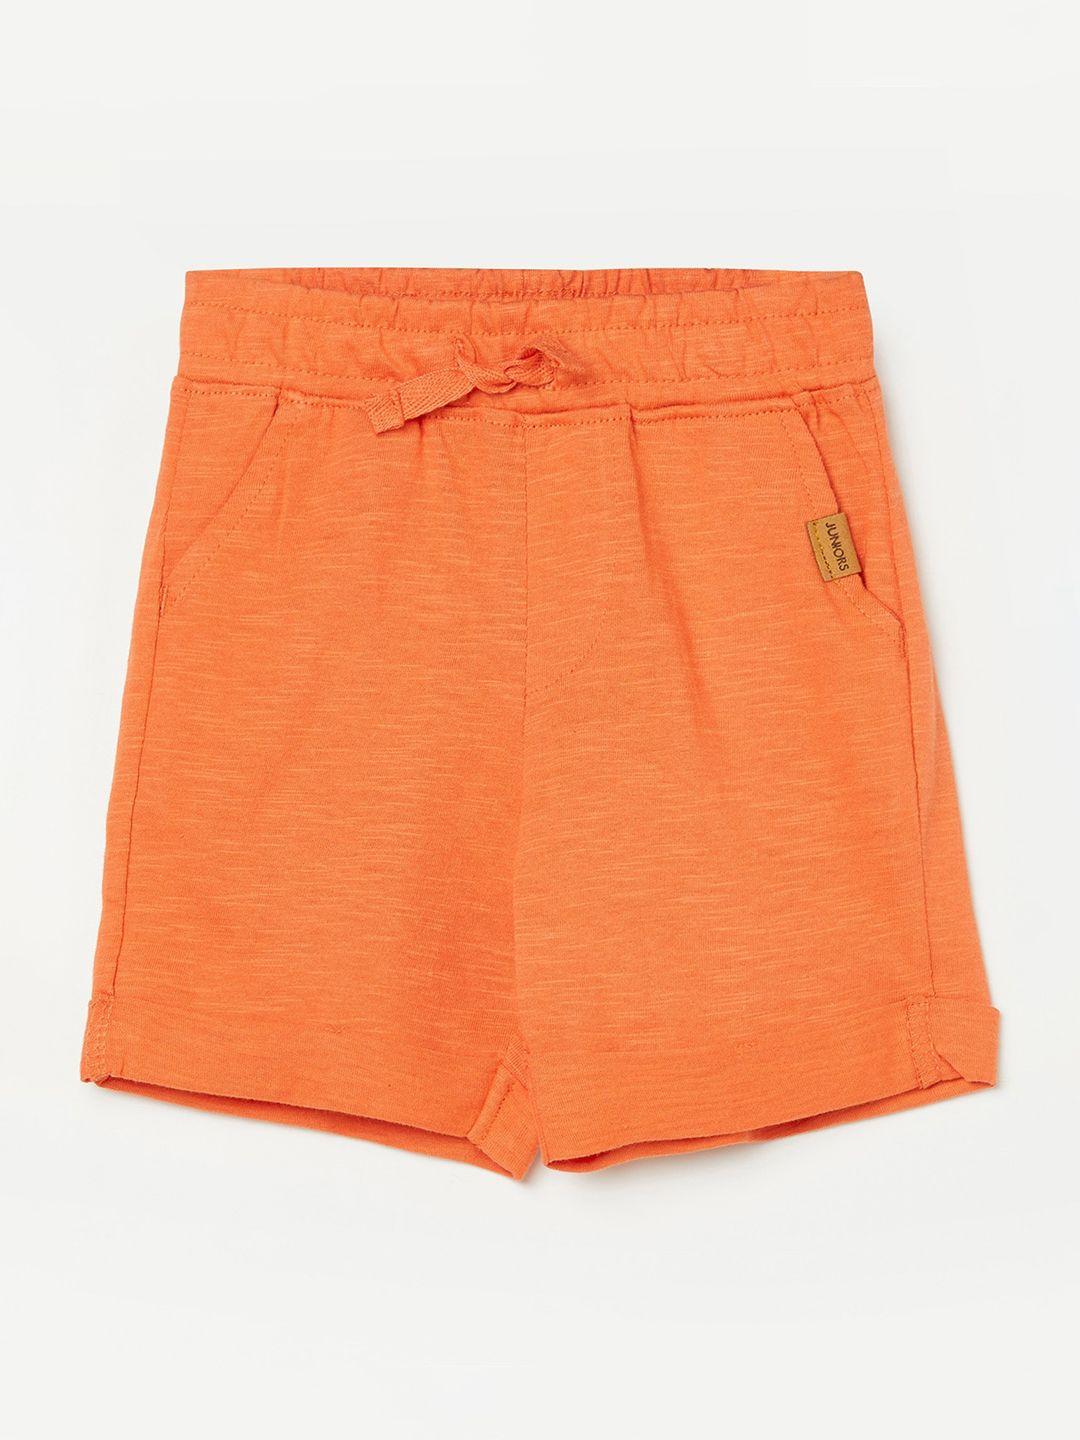 Juniors by Lifestyle Boys Orange Shorts